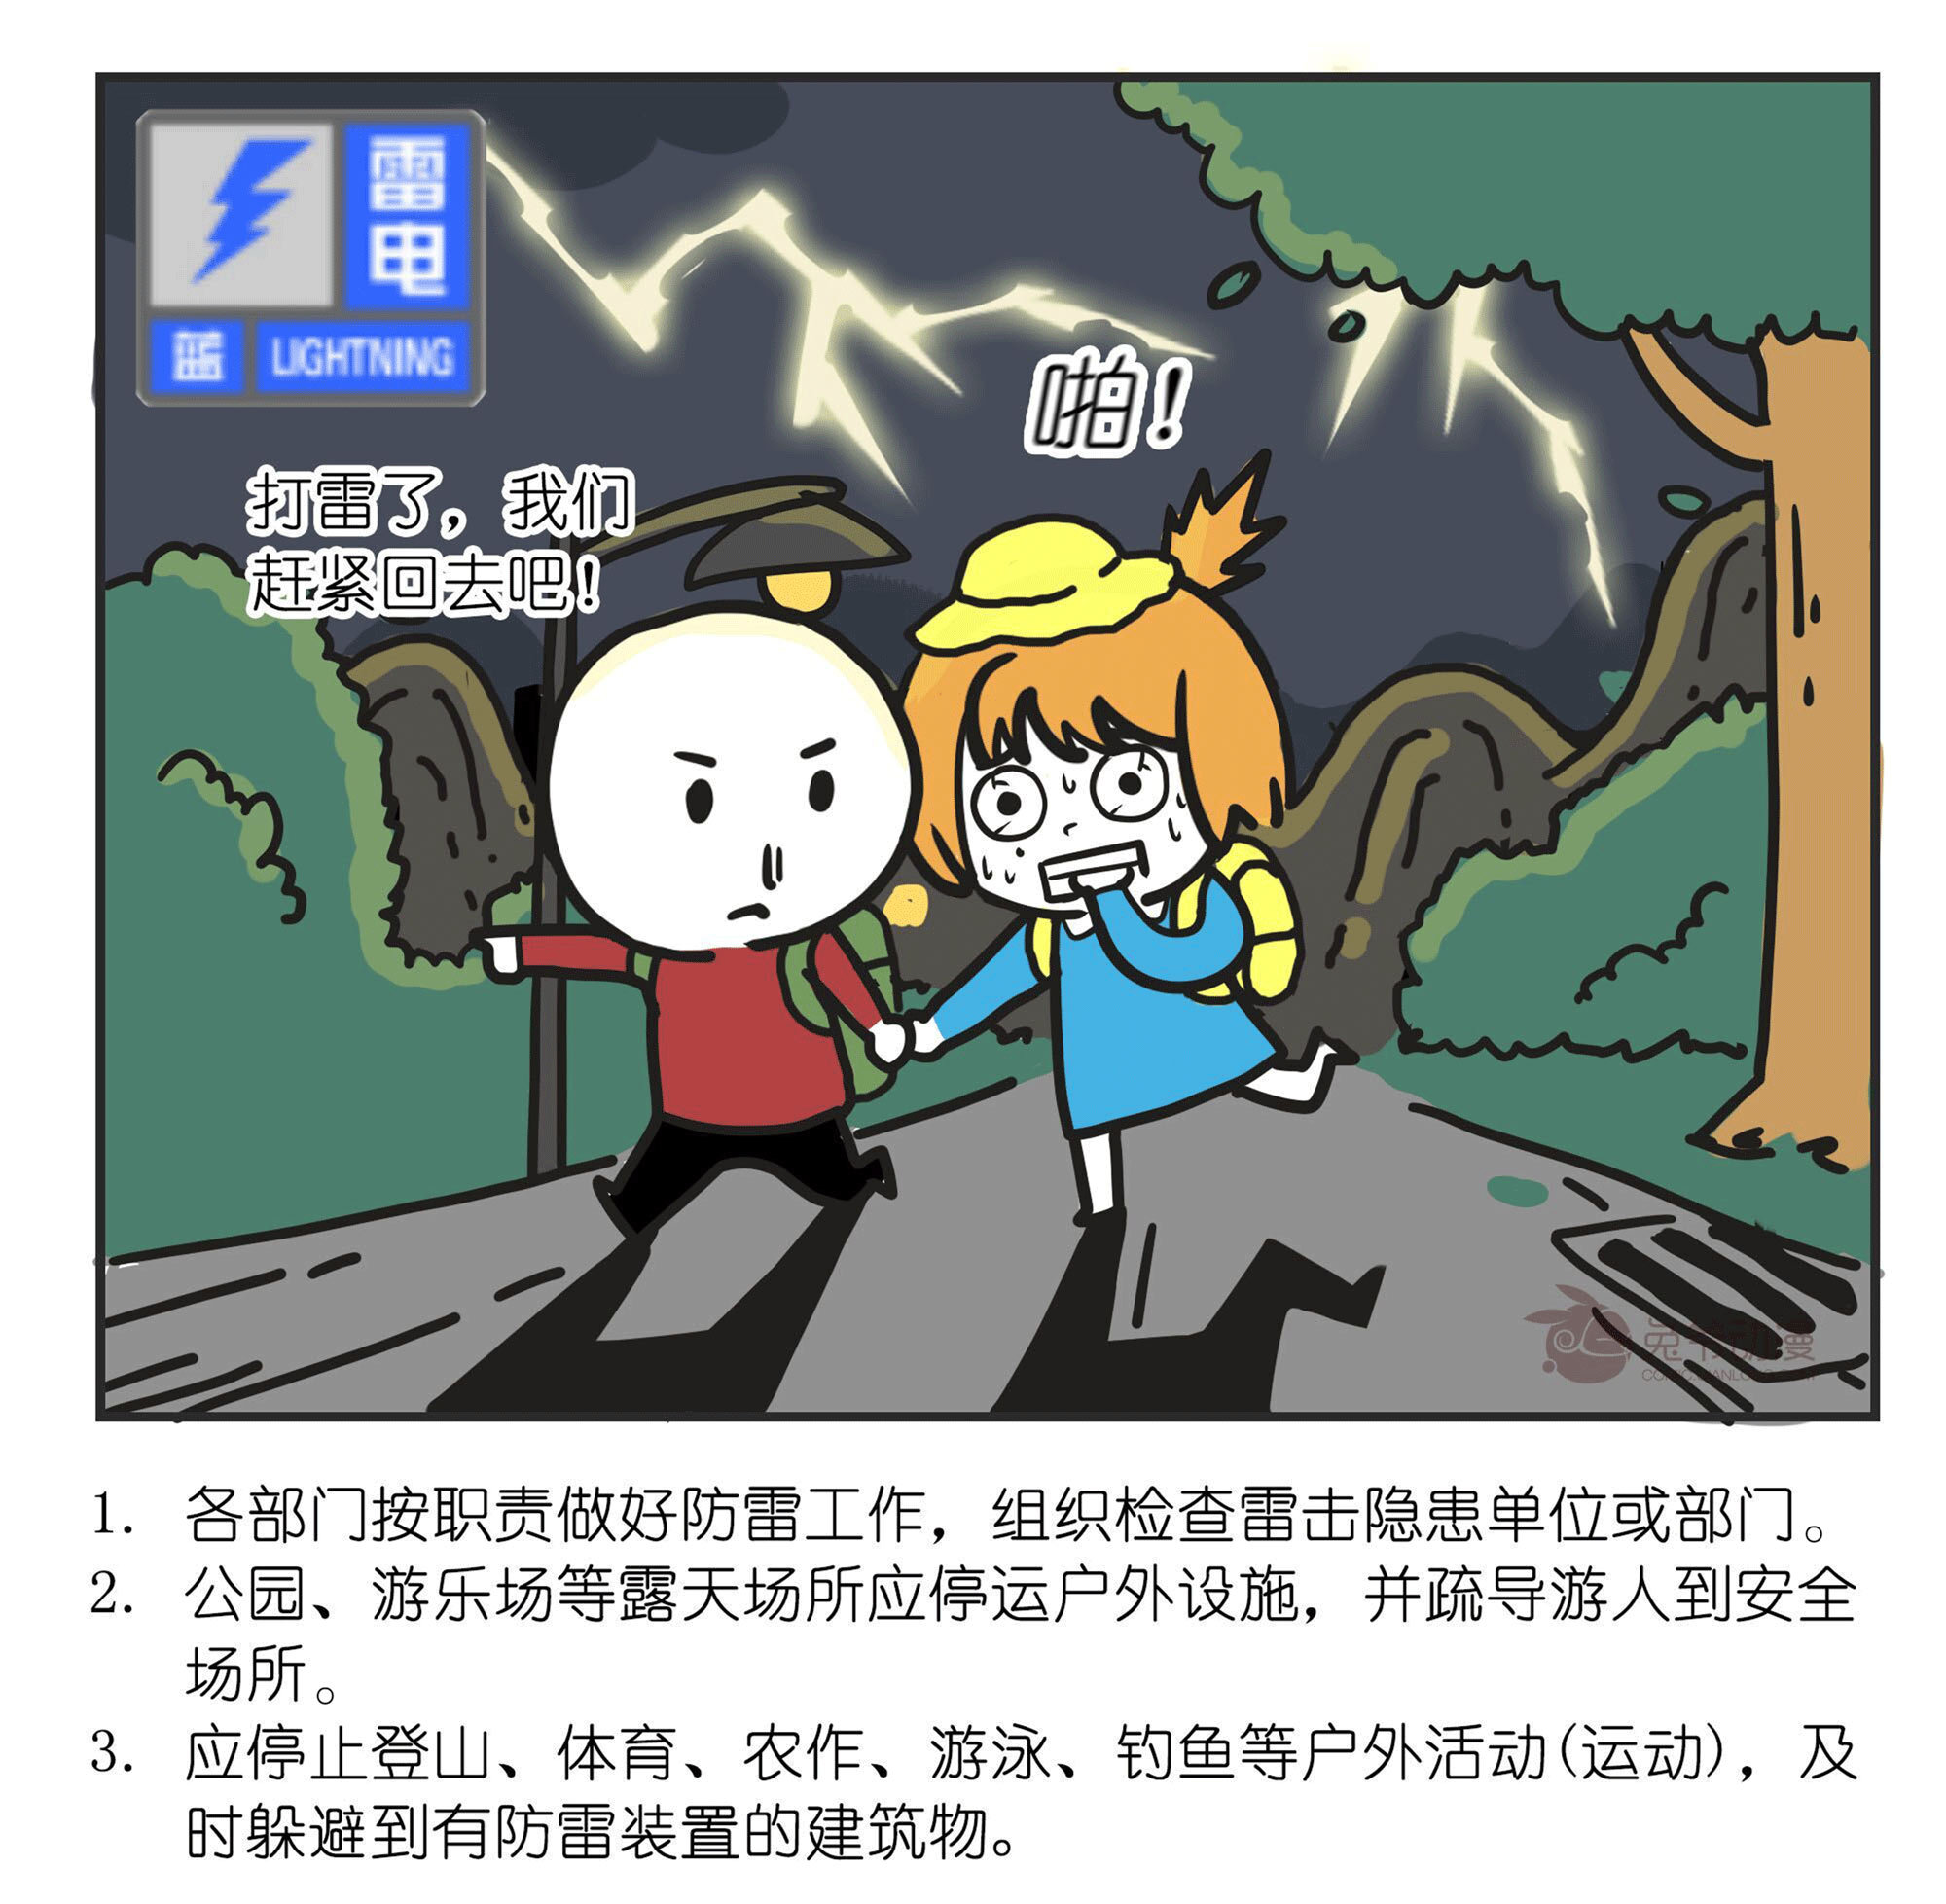 北京市气象台2022年6月23日15时00分发布雷电蓝色预警信号